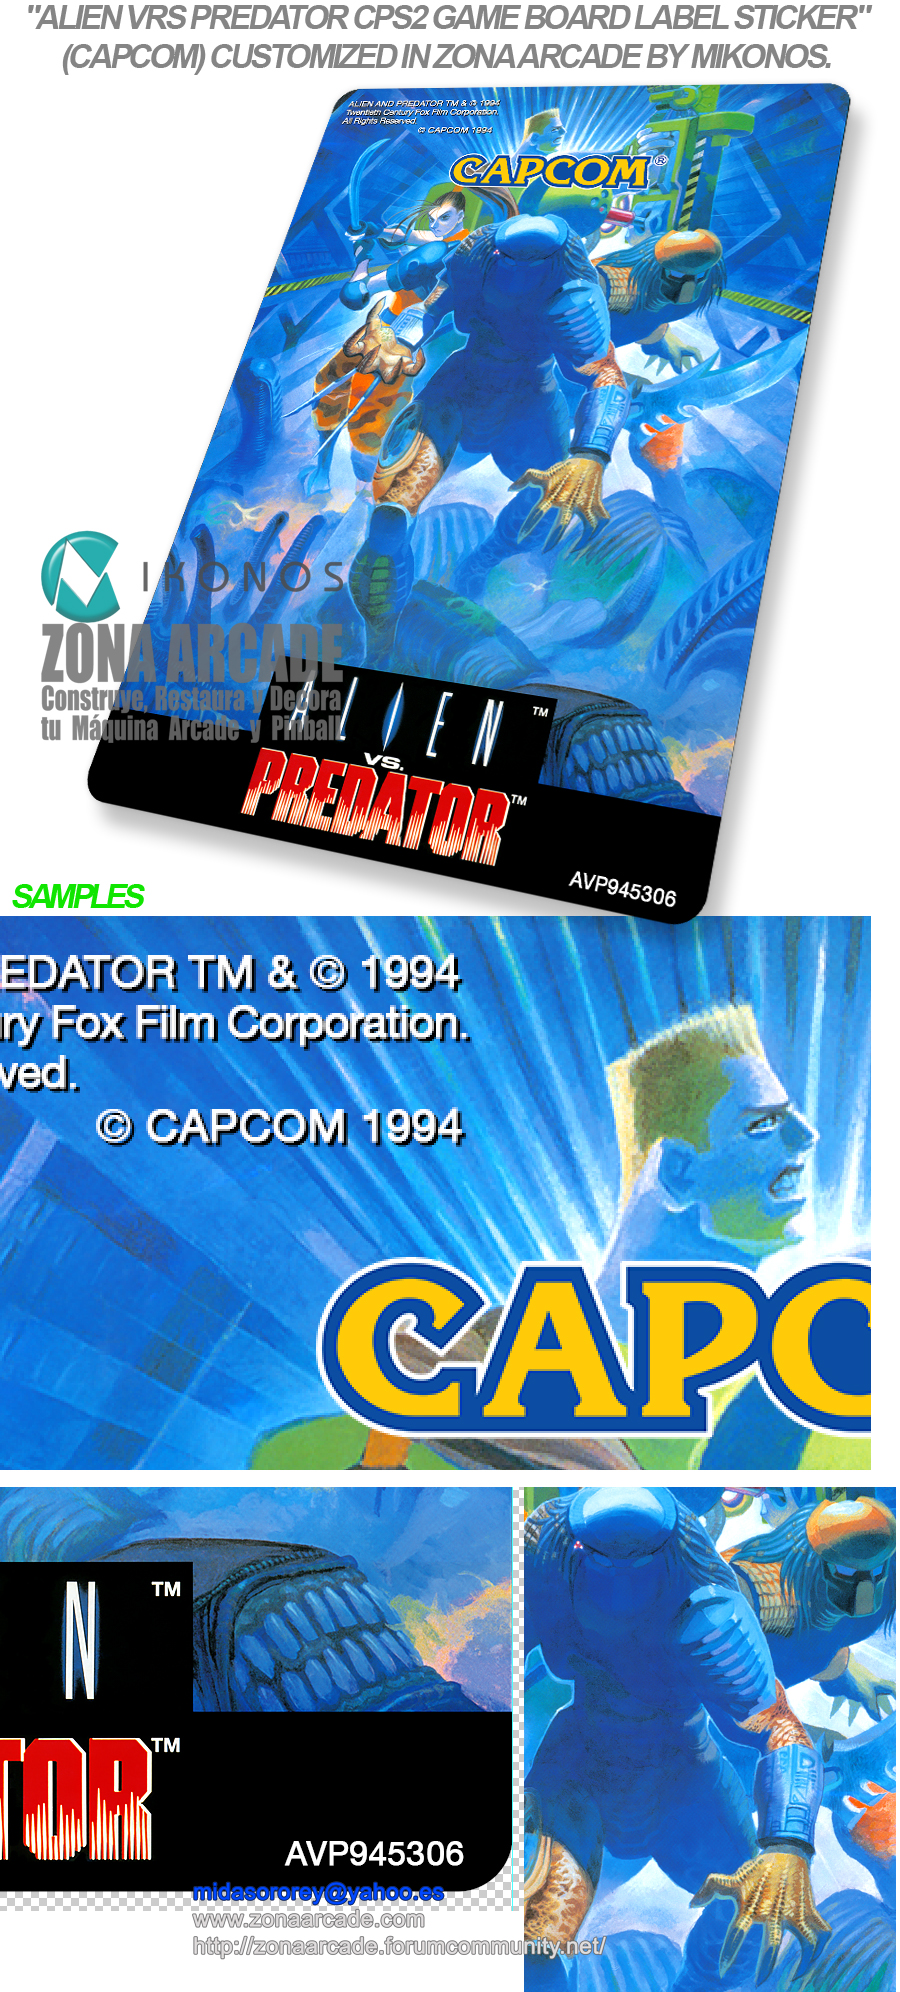 Alien-Vs-Predator-Custom-CPS2-Game-Board-Label-Sticker-Reproduced-Mikonos2